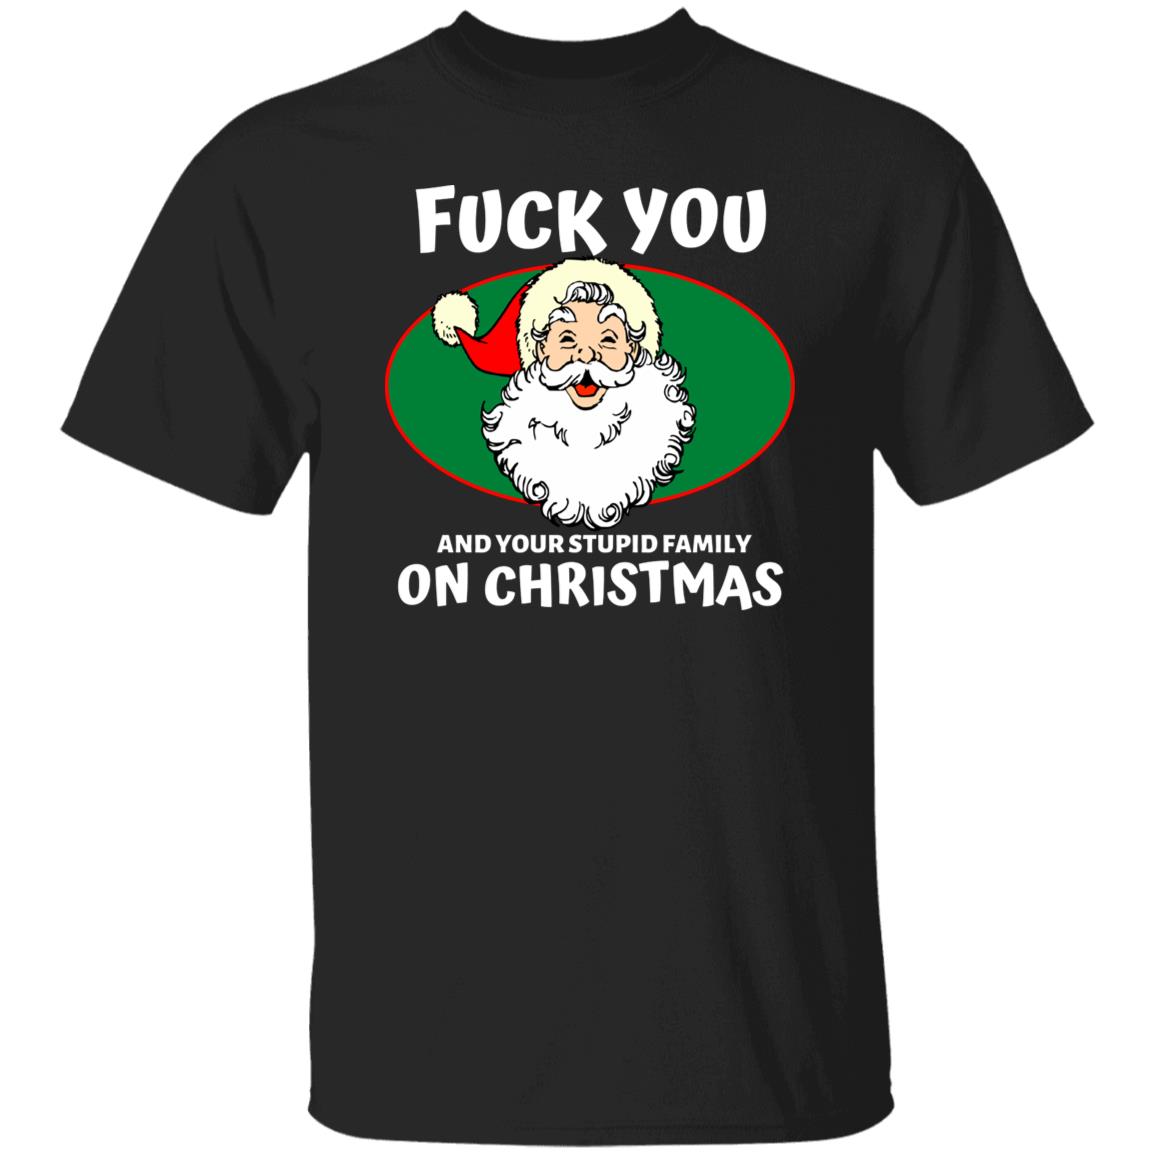 Bad Santa Say FU#K You Christmas T-shirt, Offensive Christmas Holiday Shirt, Bad Santa Graphic Tee